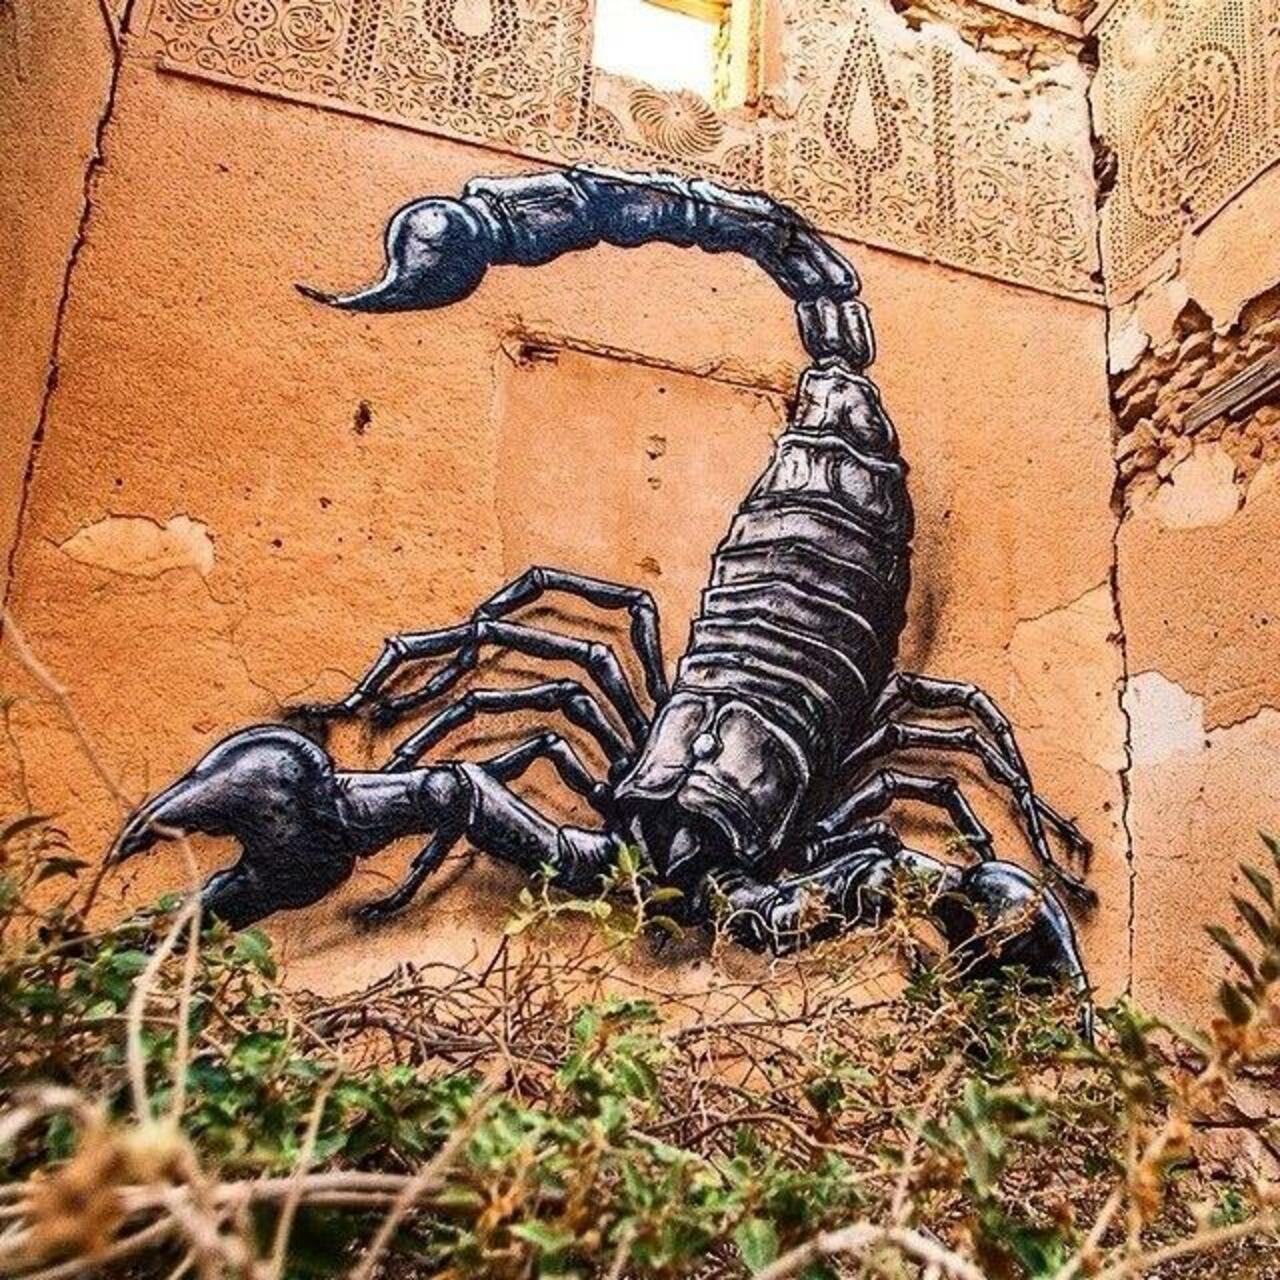 RT @designopinion: Artist ROA new Scorpion Street Art mural in Djerba, Tunisia #art #graffiti #nature #streetart https://t.co/Ktsa2ud4Ro